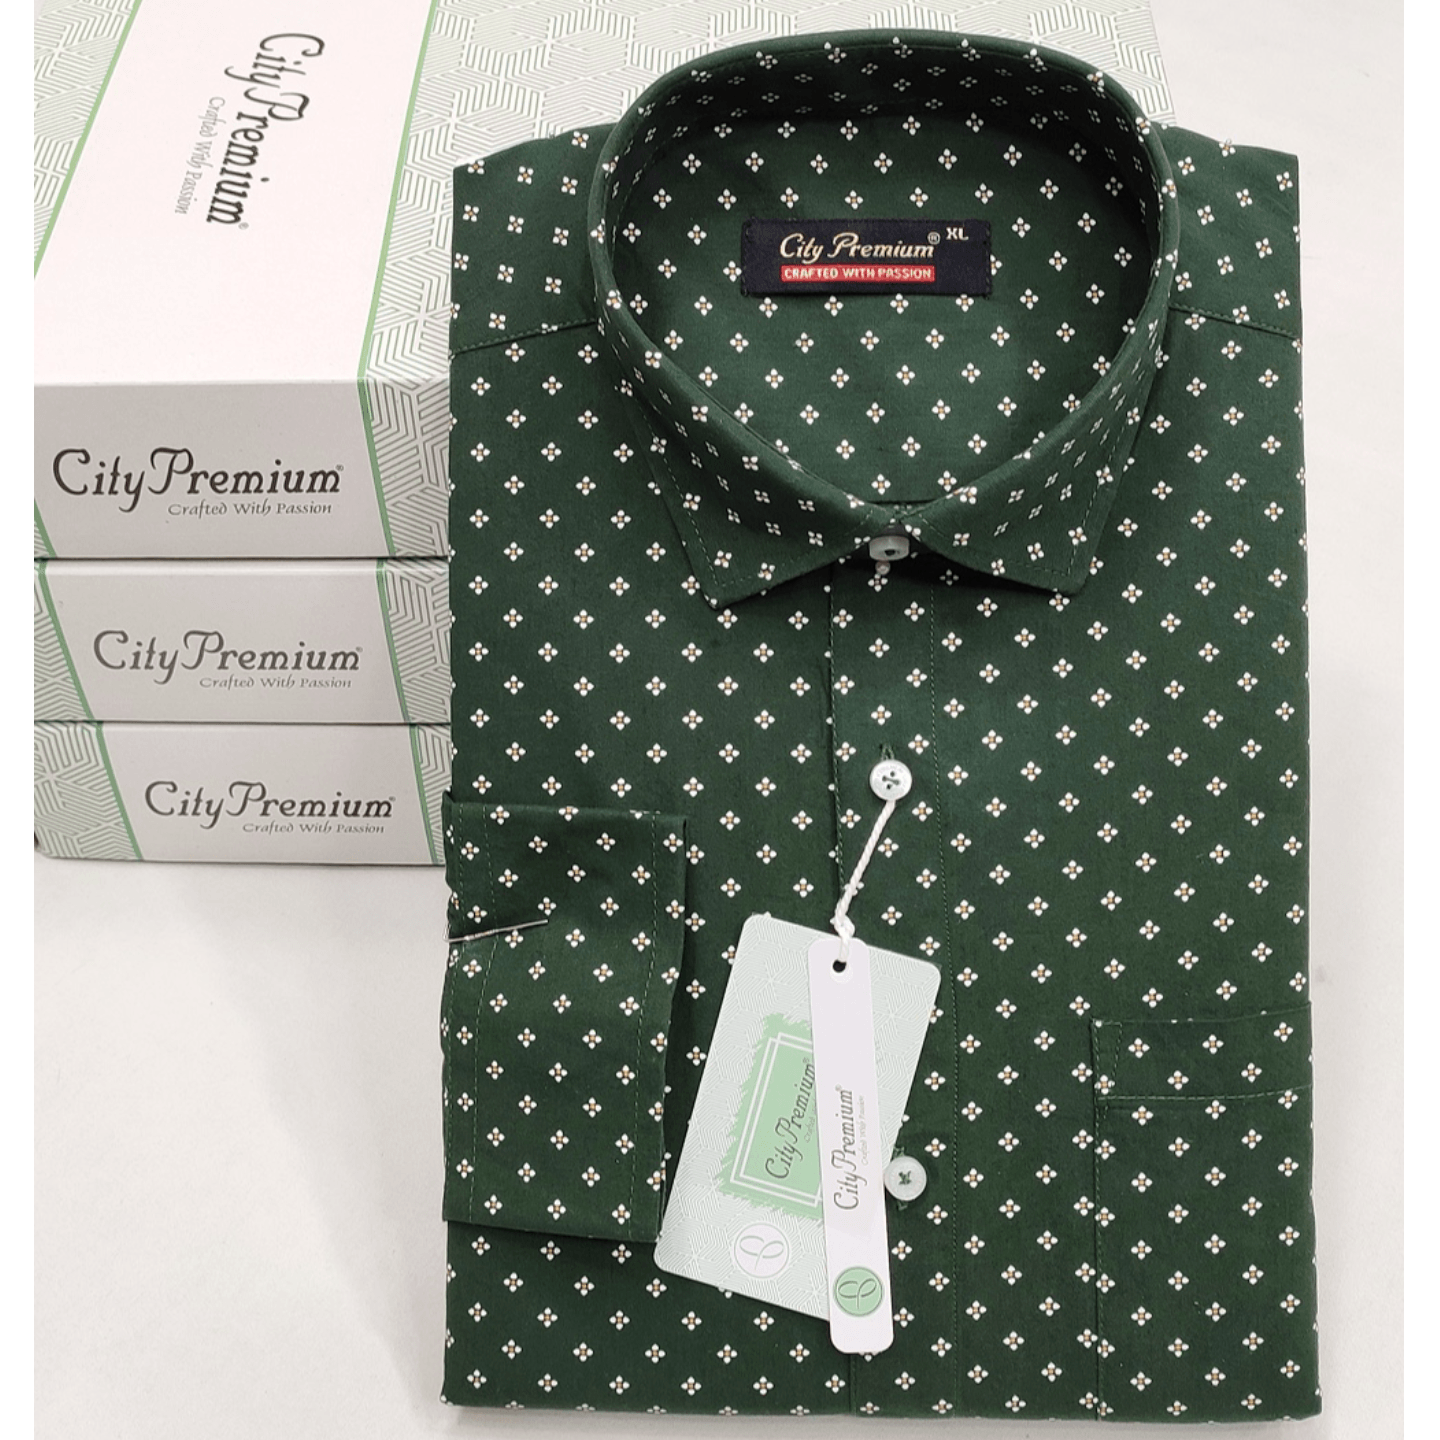 City Premium Men's Regular Fit Green Printed Shirt